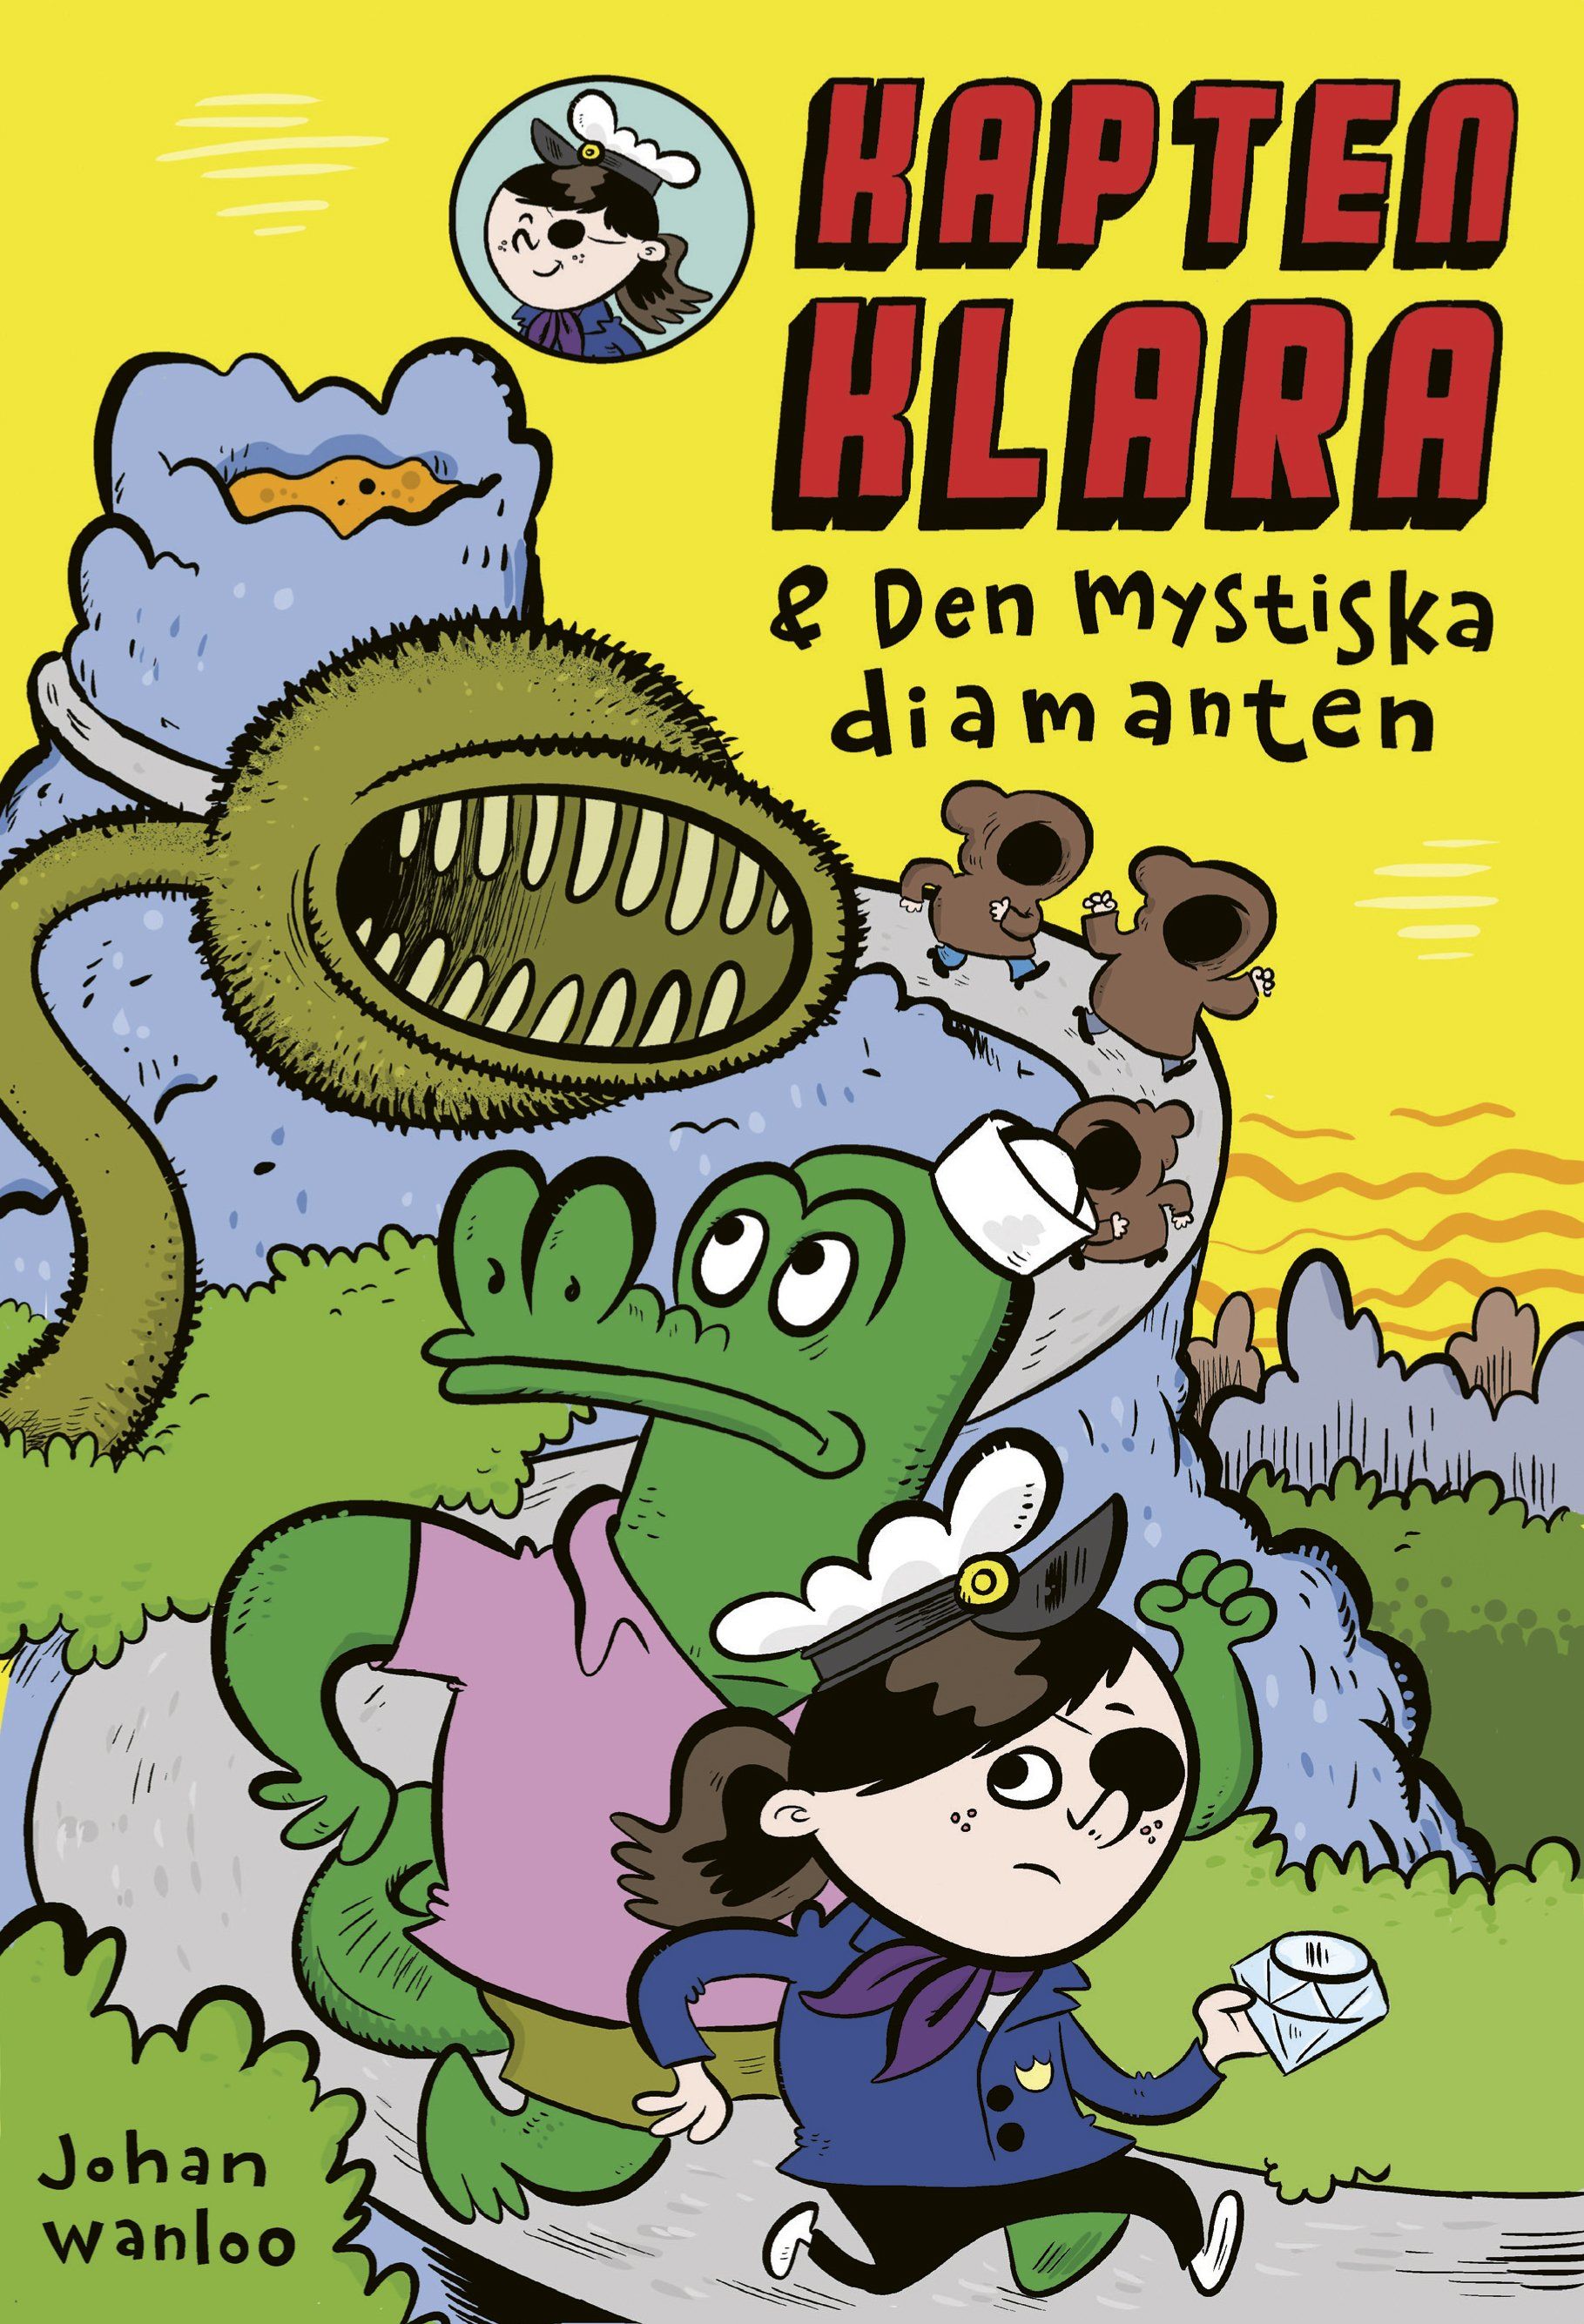 Barnboken Kapten Klara och den mystiska diamanten är skriven av Johan Wanloo på Stevali Bokförlag.